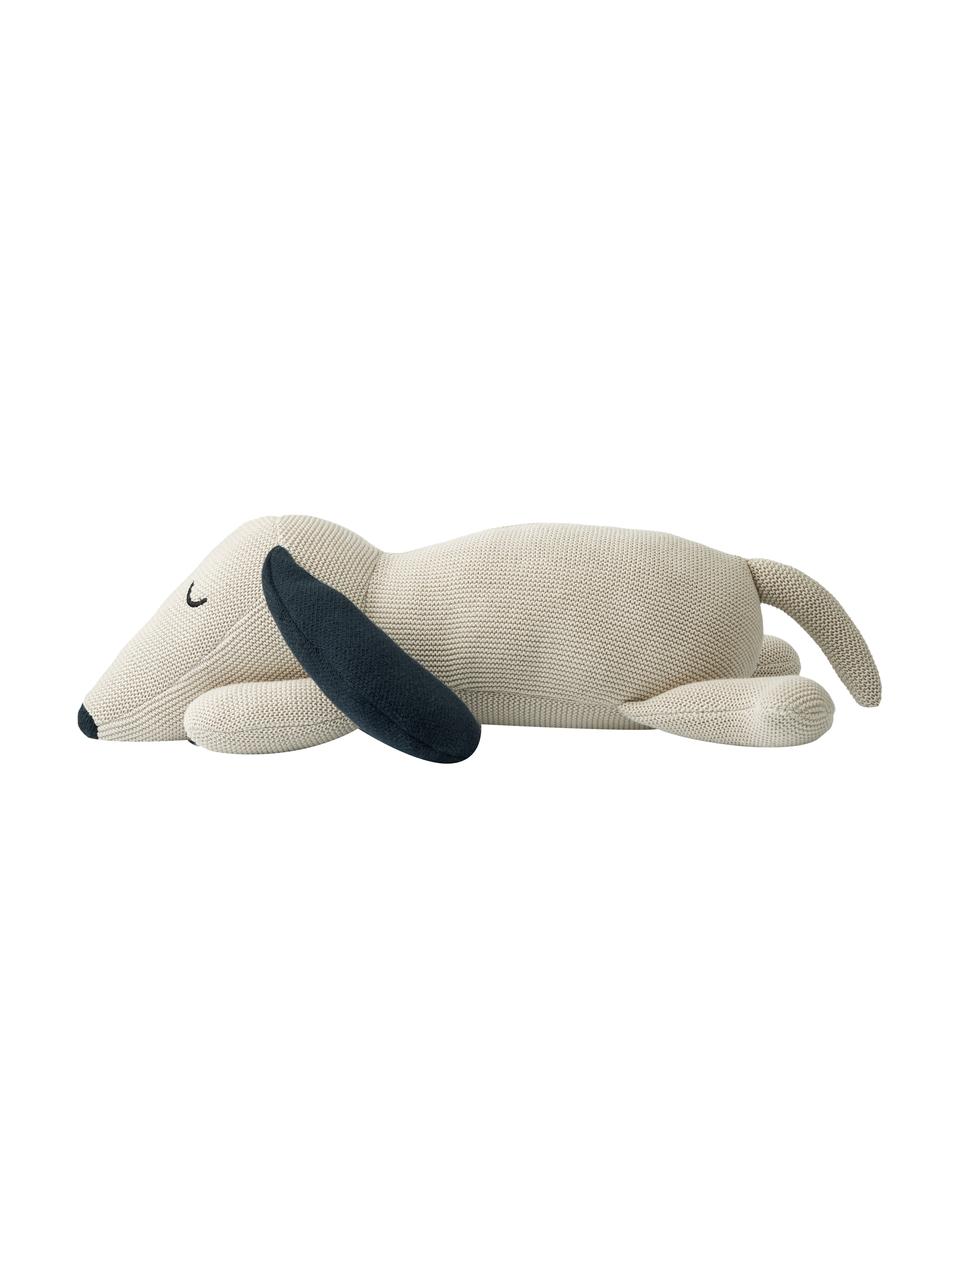 Kuscheltier Daniel the Dog, Bezug: 100 % Baumwolle, Off White, Dunkelblau, B 40 x H 14 cm